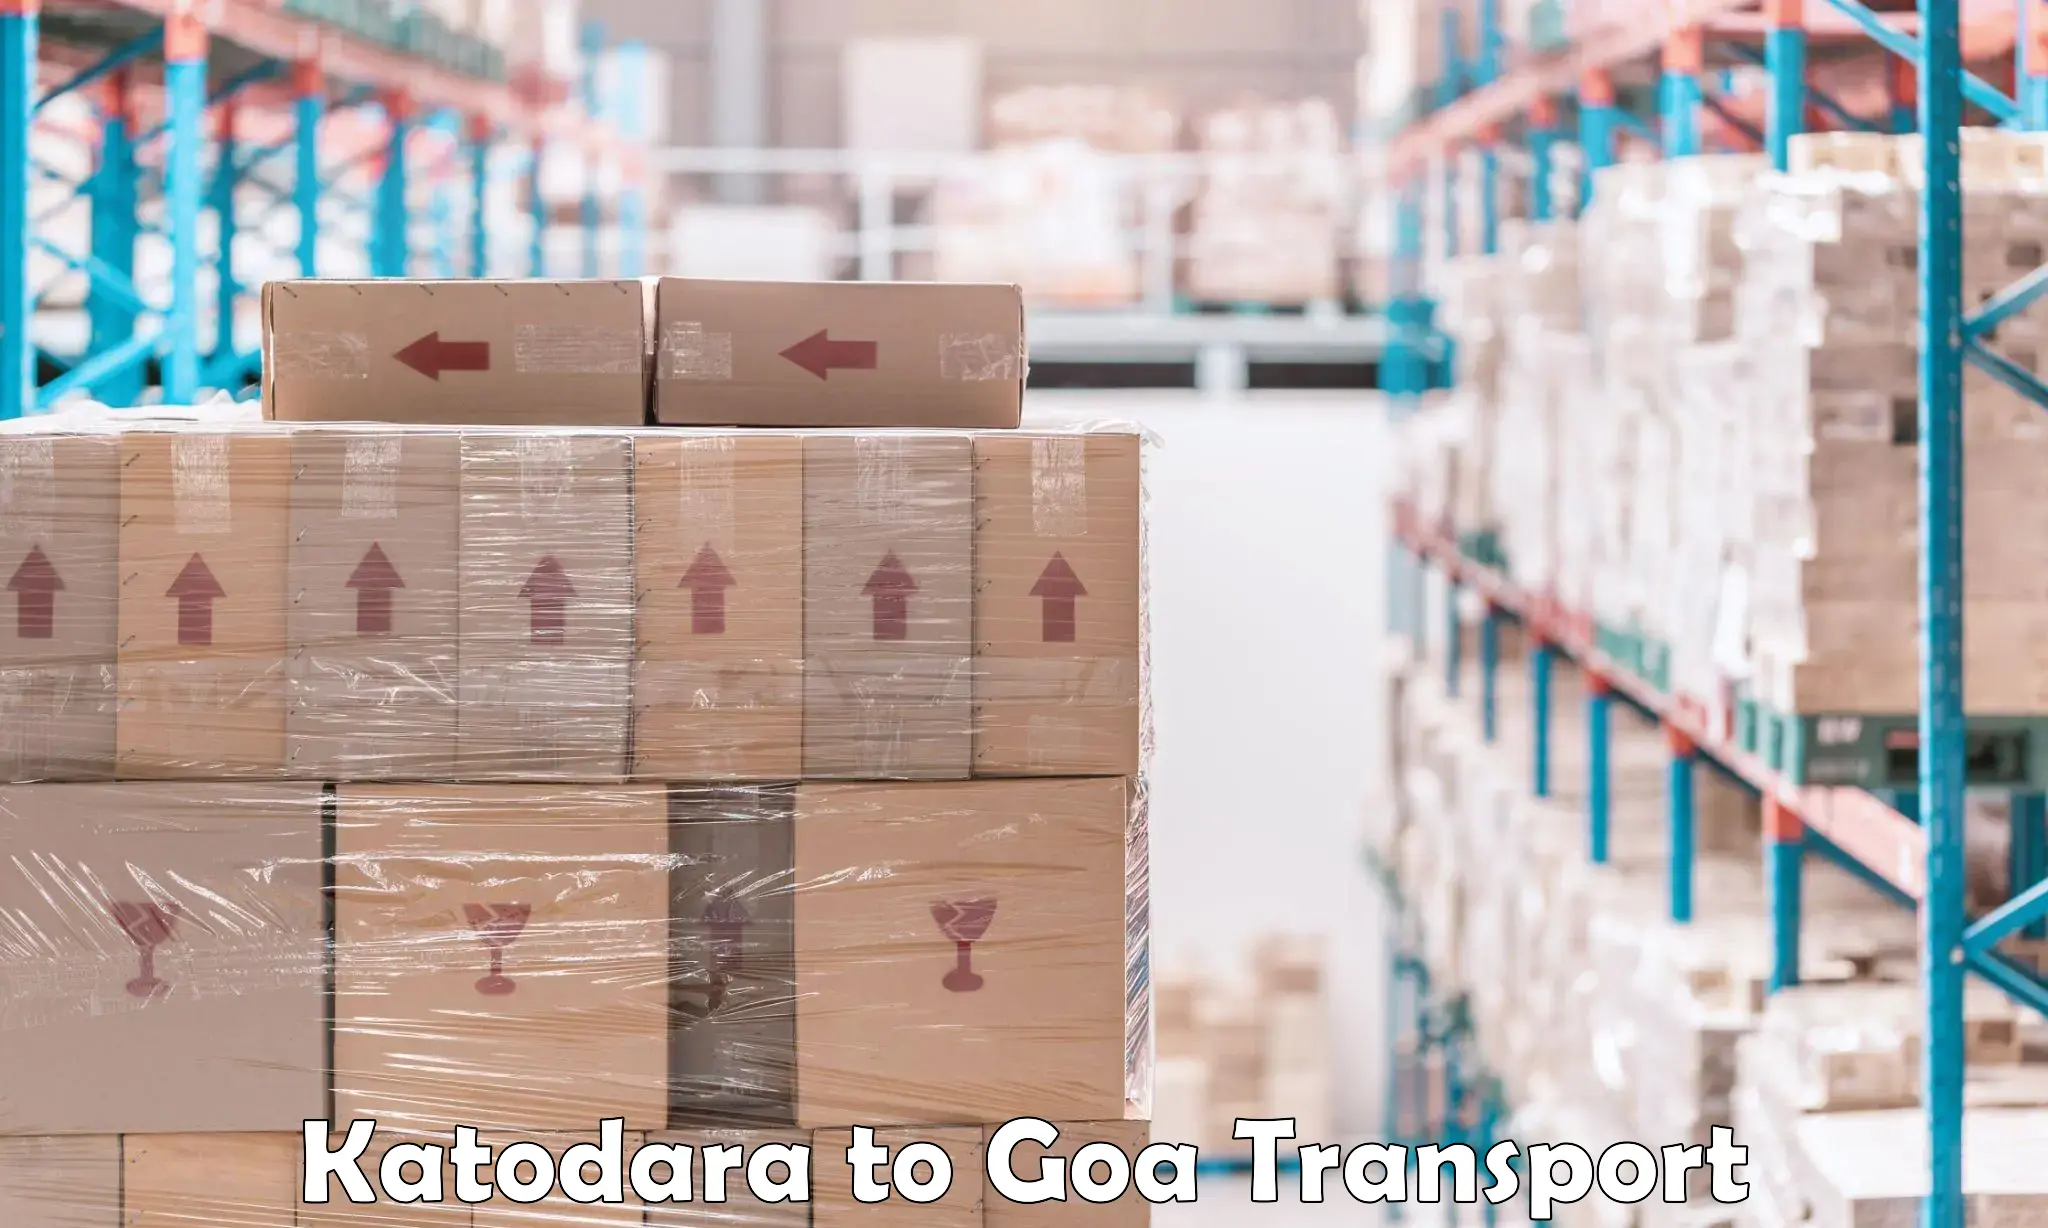 Nearest transport service Katodara to Ponda